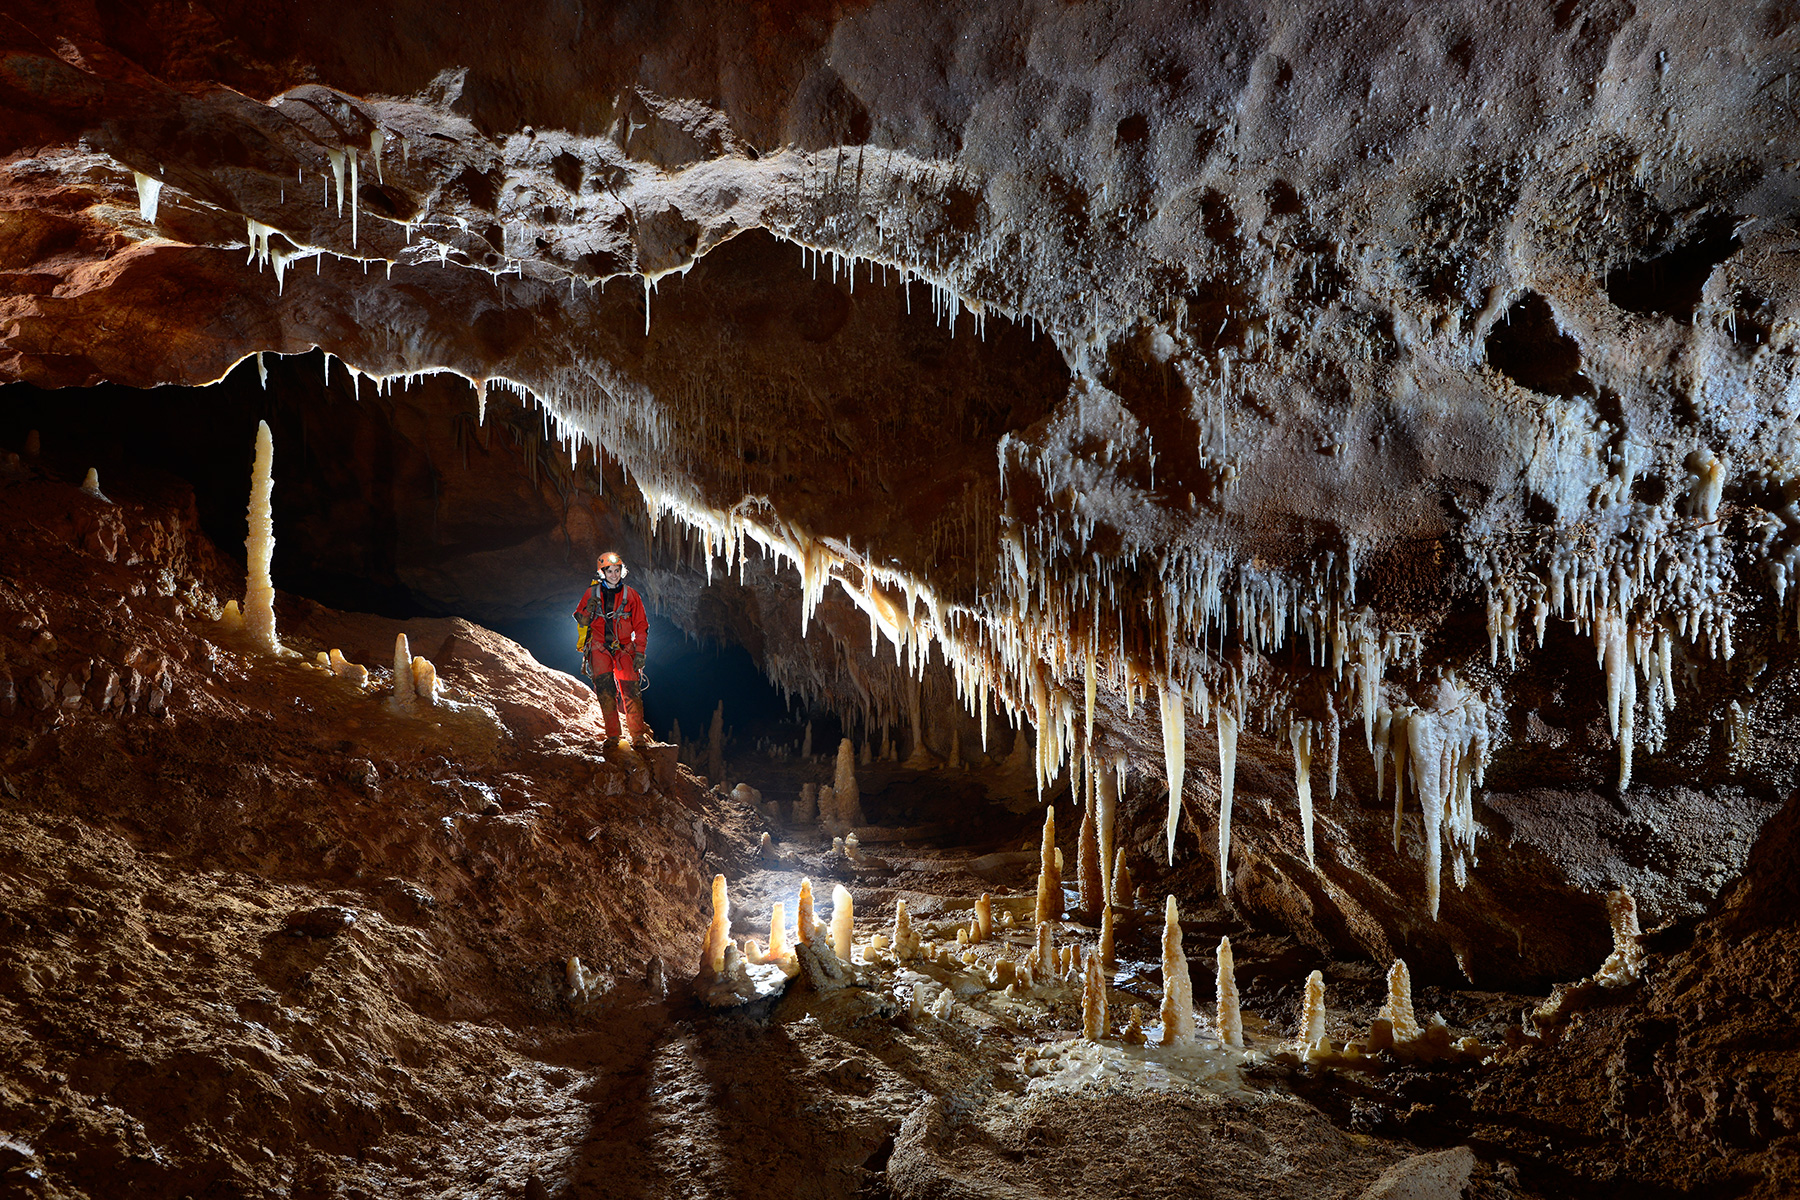 Grotte de Saint-Marcel d'Ardèche (réseau 4) - Ensemble de stalagmites et stalactites translucides au milieu de la galerie